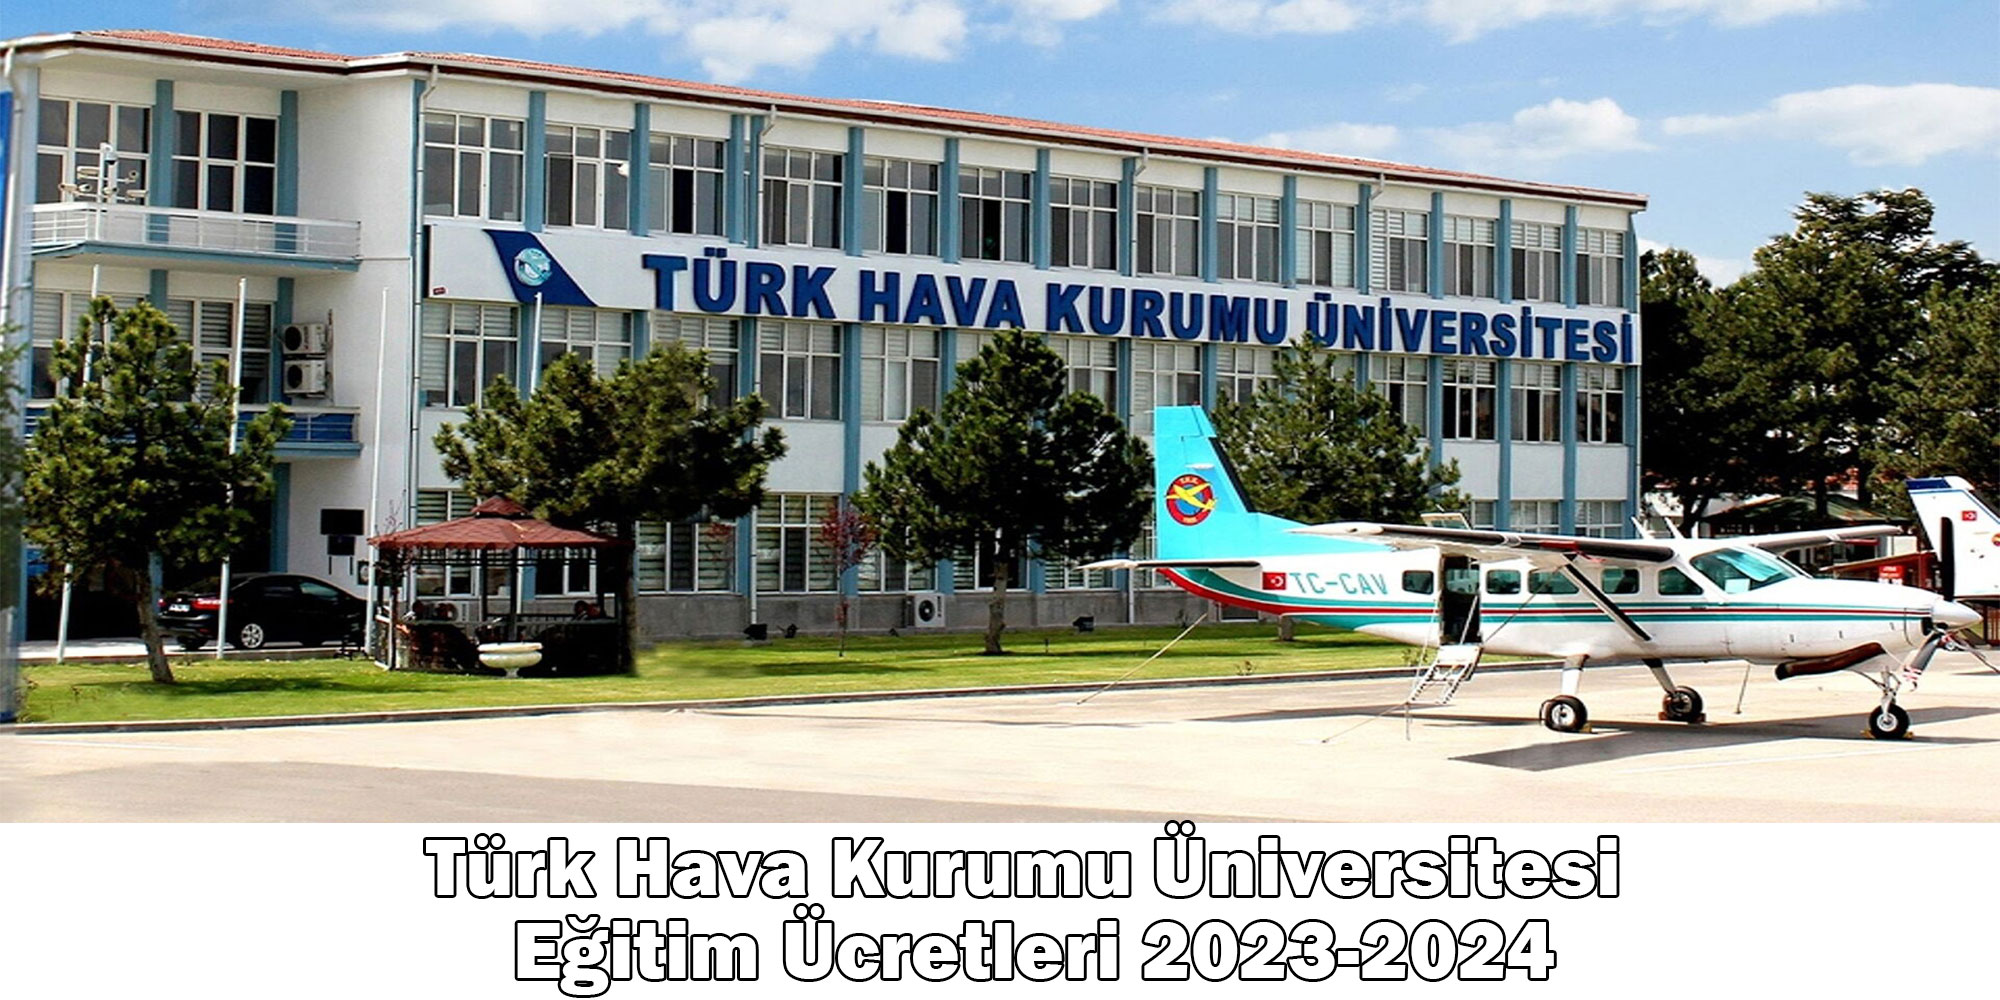 turk hava kurumu universitesi egitim ucretleri 2023 2024